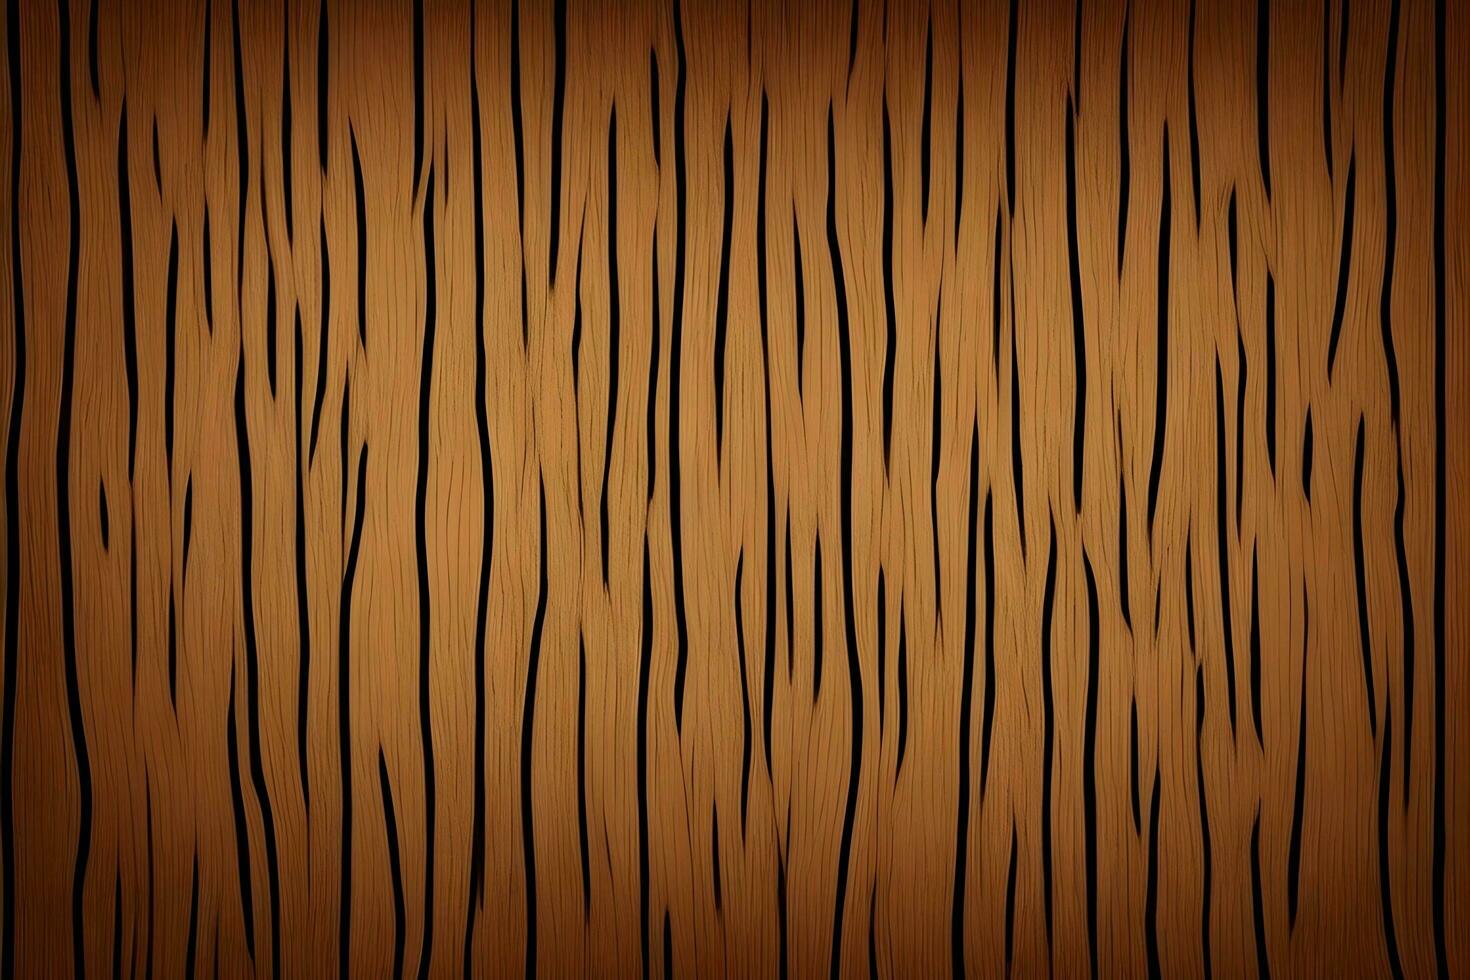 Grunge Wood Background, Wood Background, Old Wood Background, Rustic Wood Background, AI Generative photo